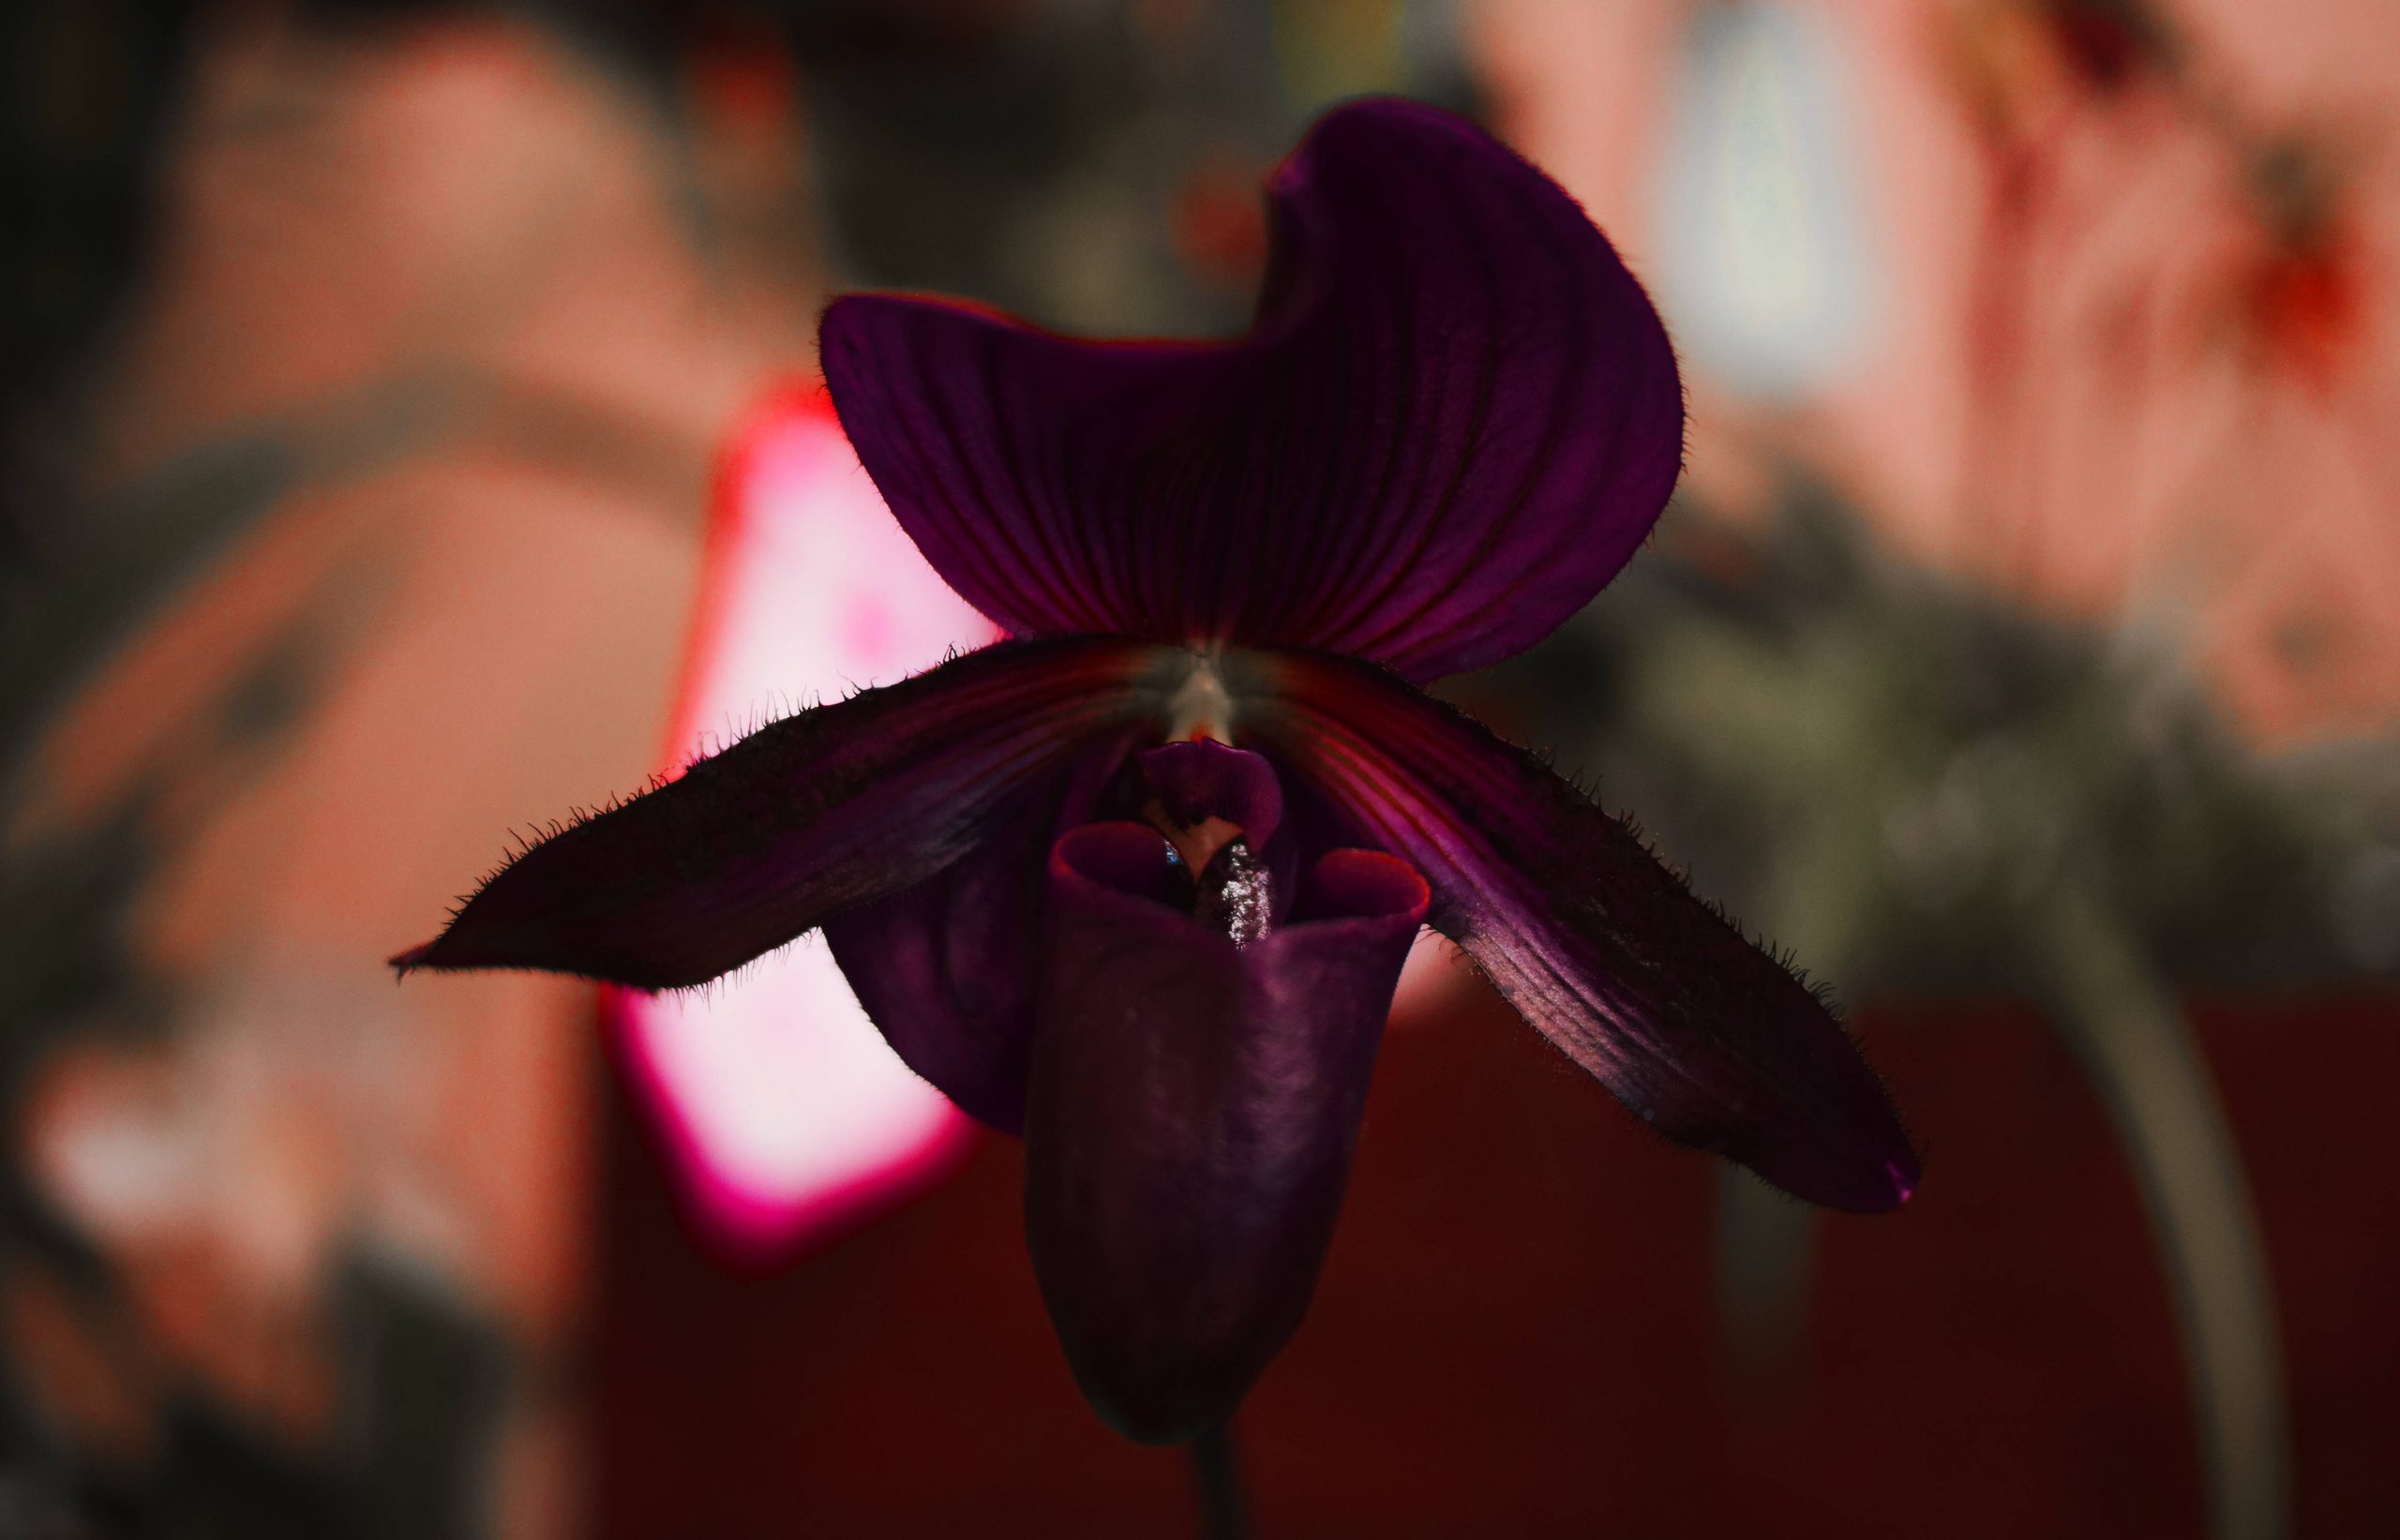 Il prodigio botanico dell'Orchidea Nera nella nuova Limited